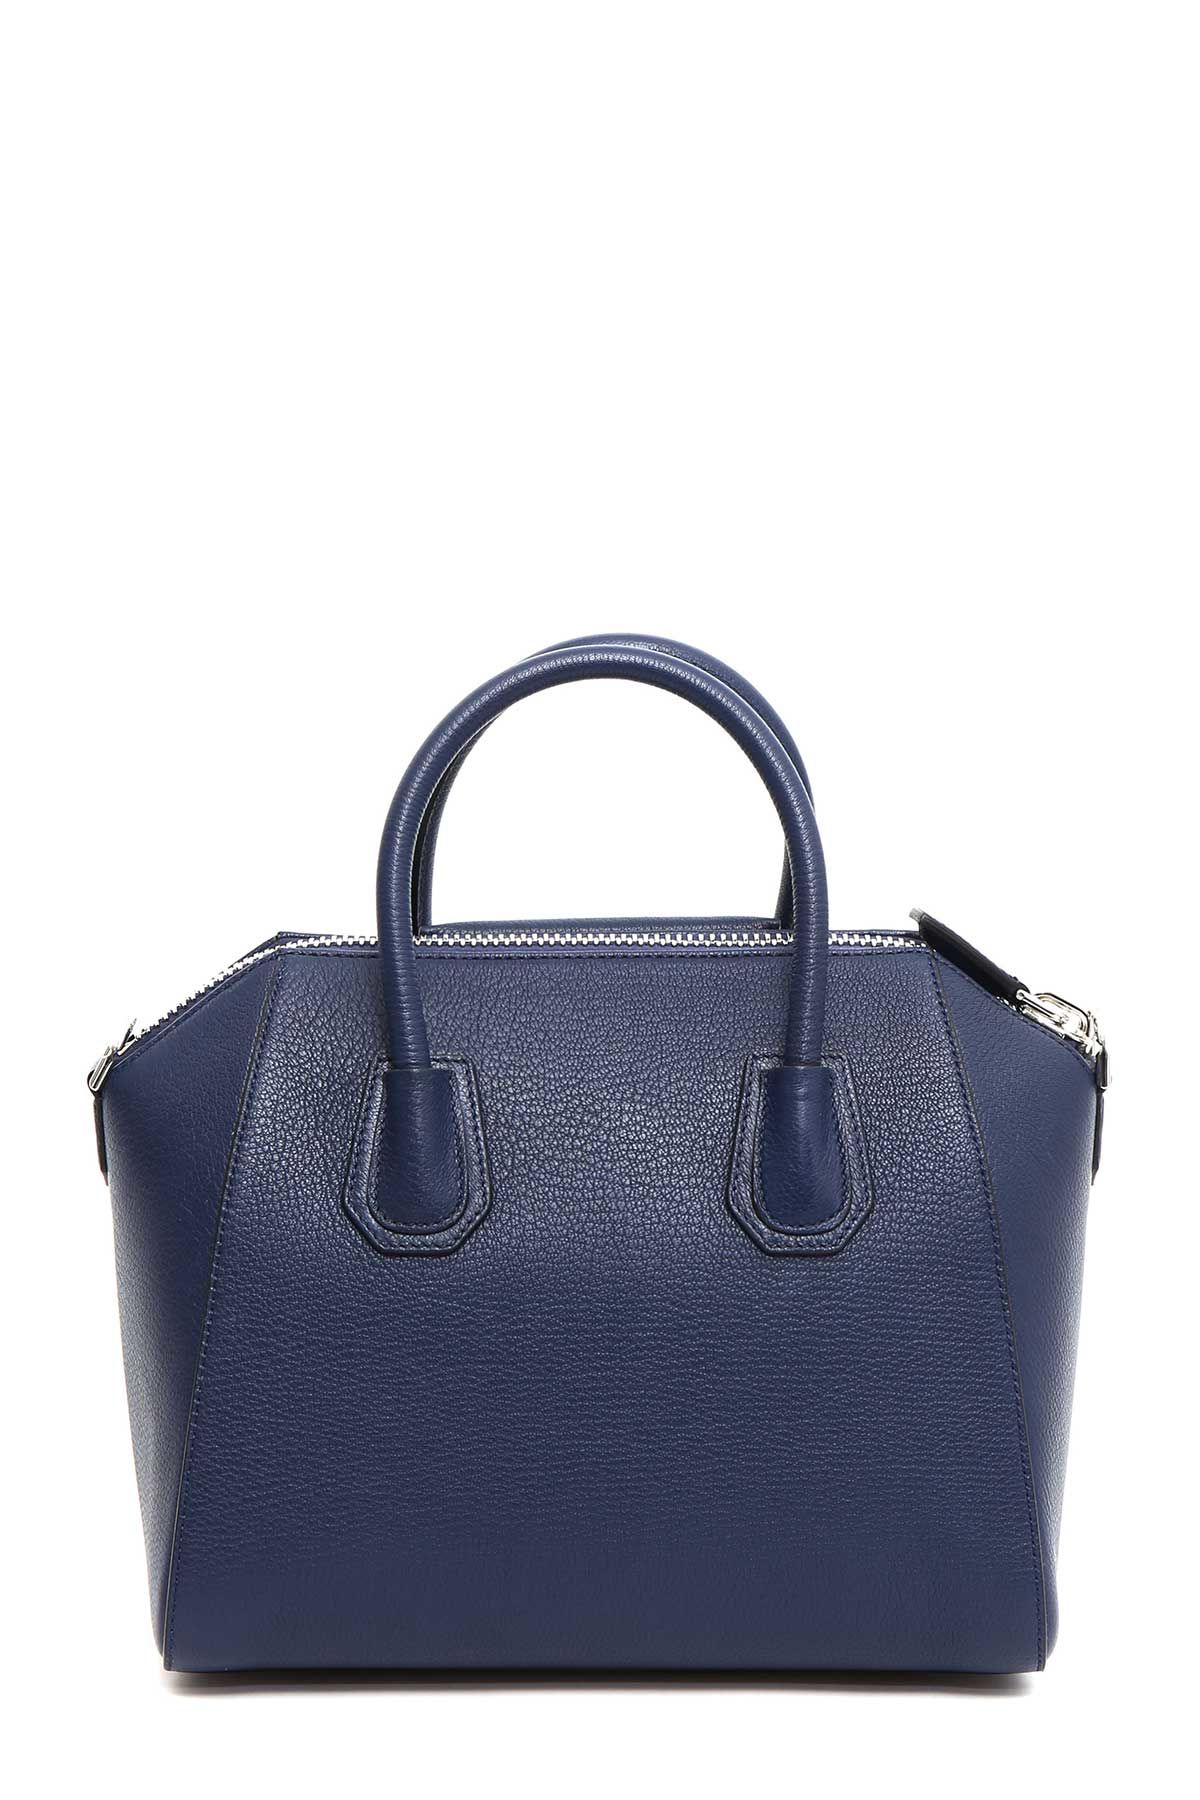 Givenchy - Givenchy &#39;antigona&#39; Small Handbag - BB05117012 403, Women&#39;s Totes | Italist